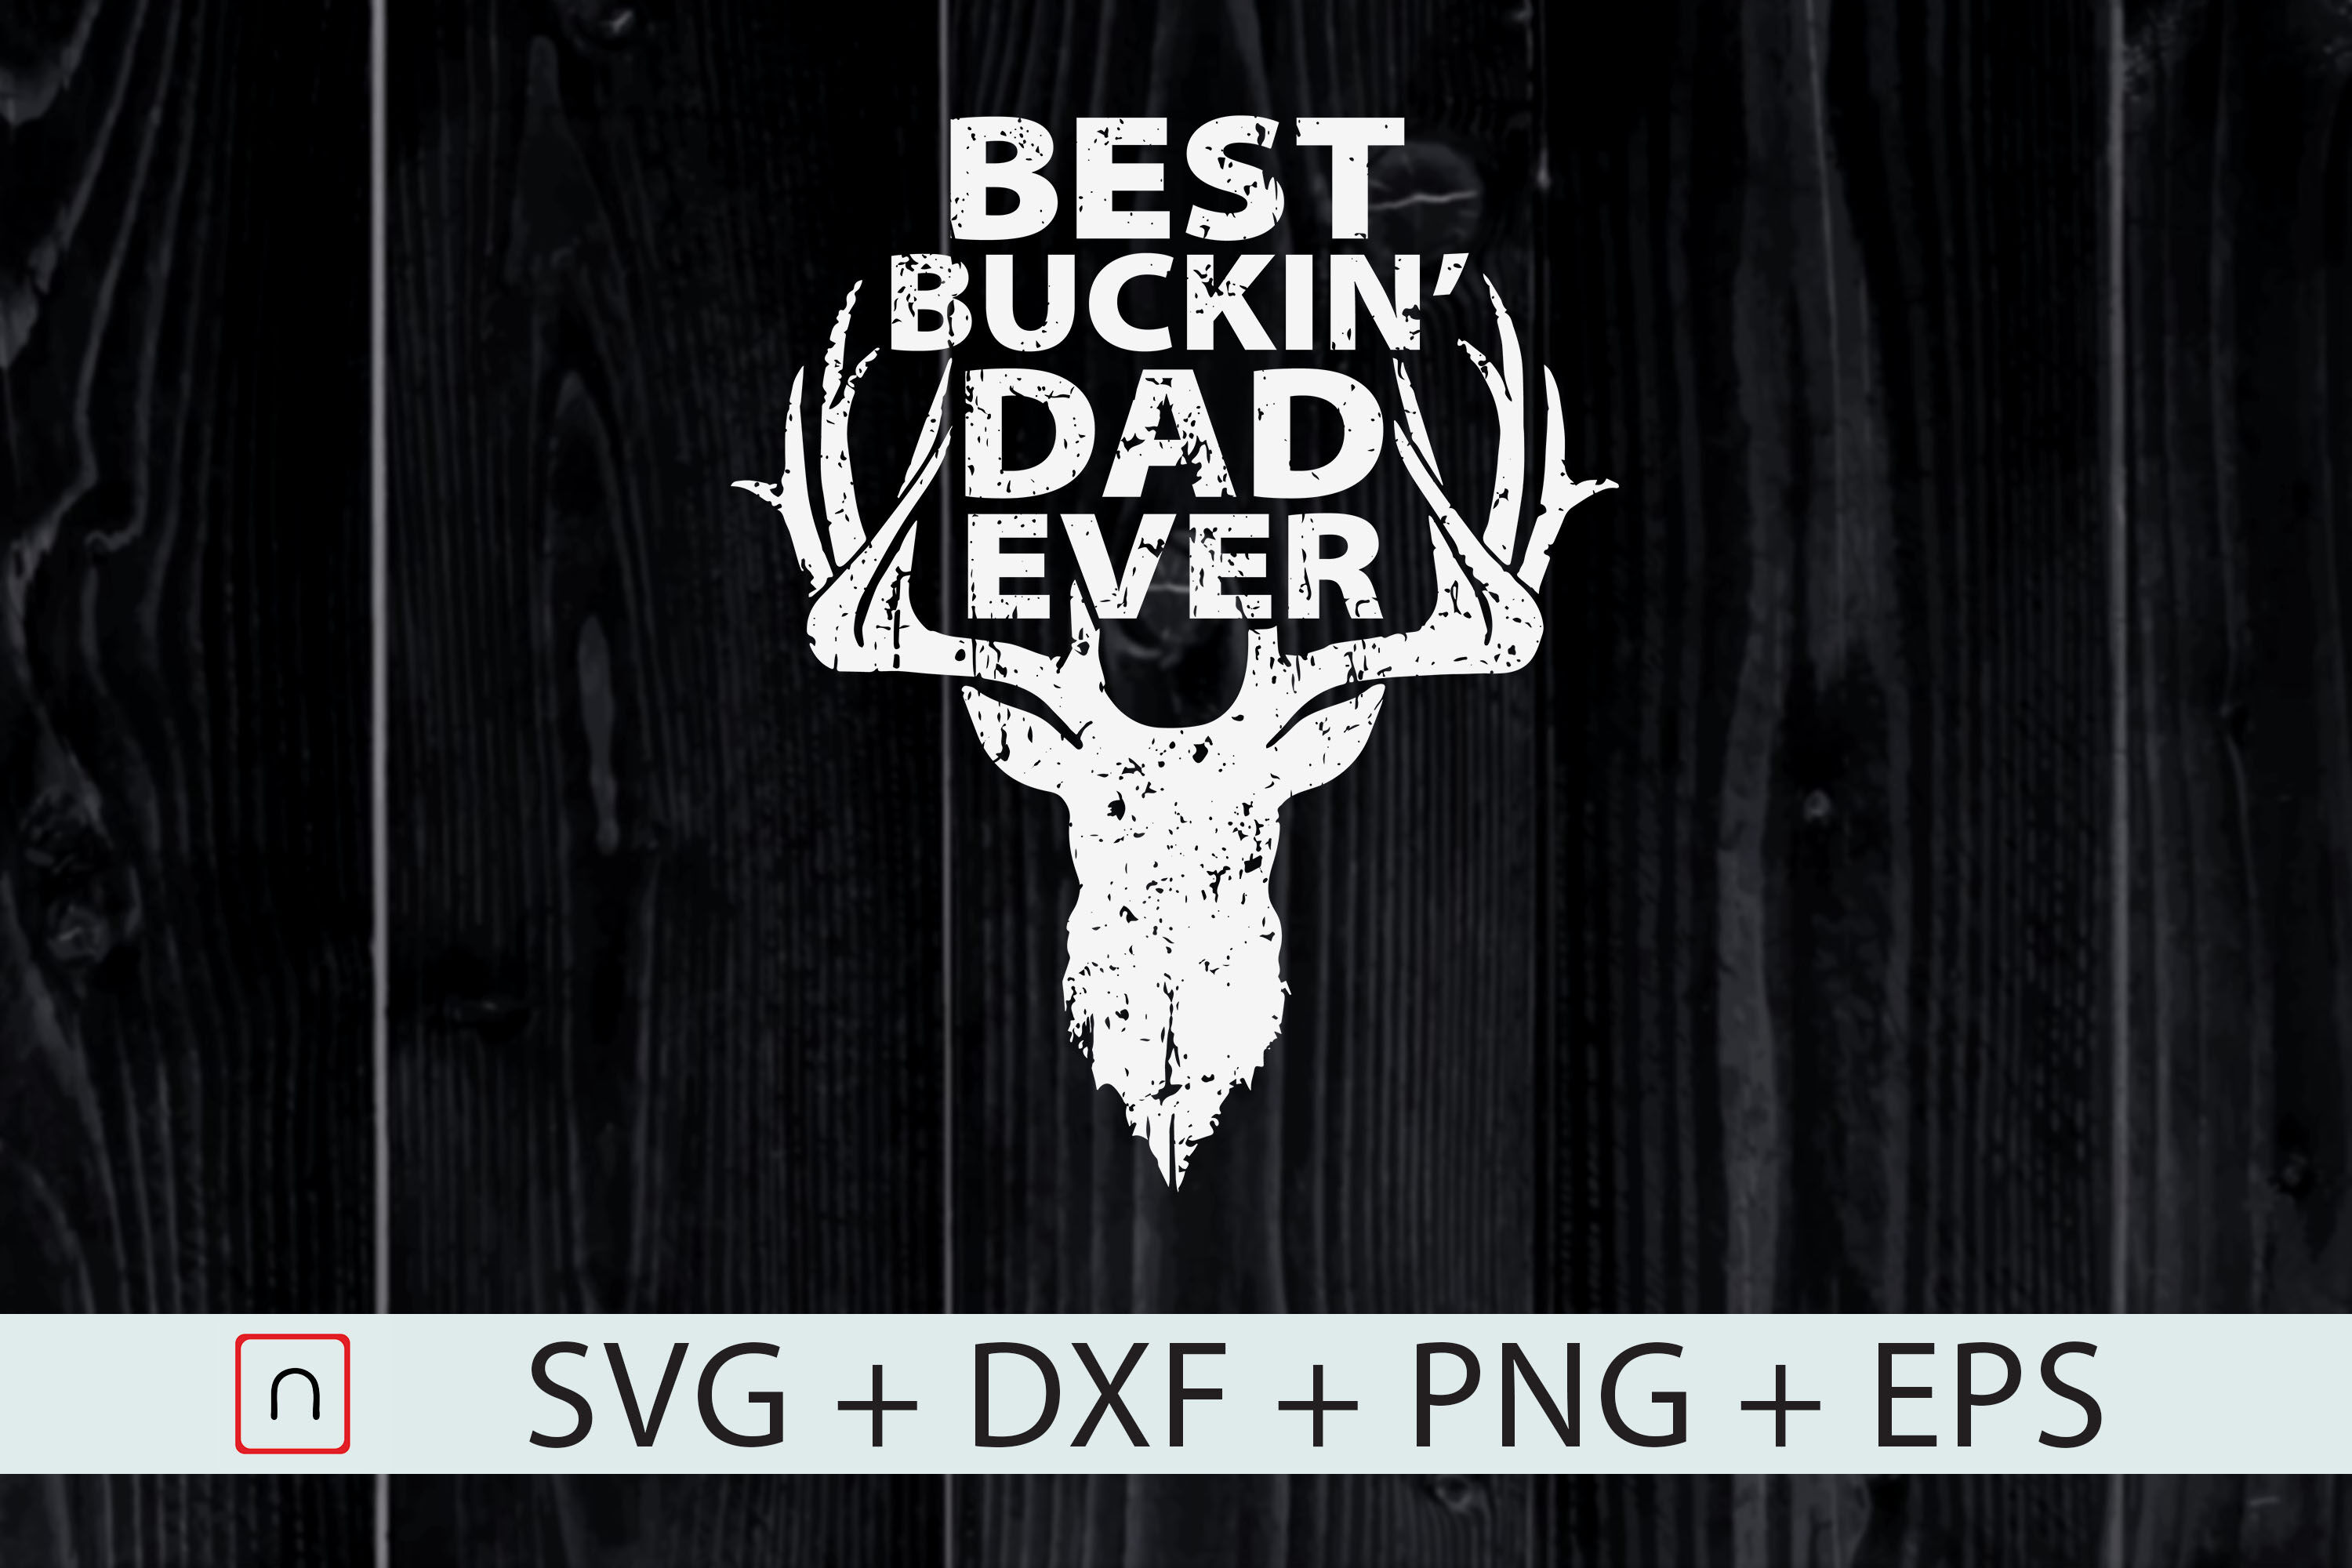 Free Free 207 Best Buckin Bonus Dad Ever Svg SVG PNG EPS DXF File